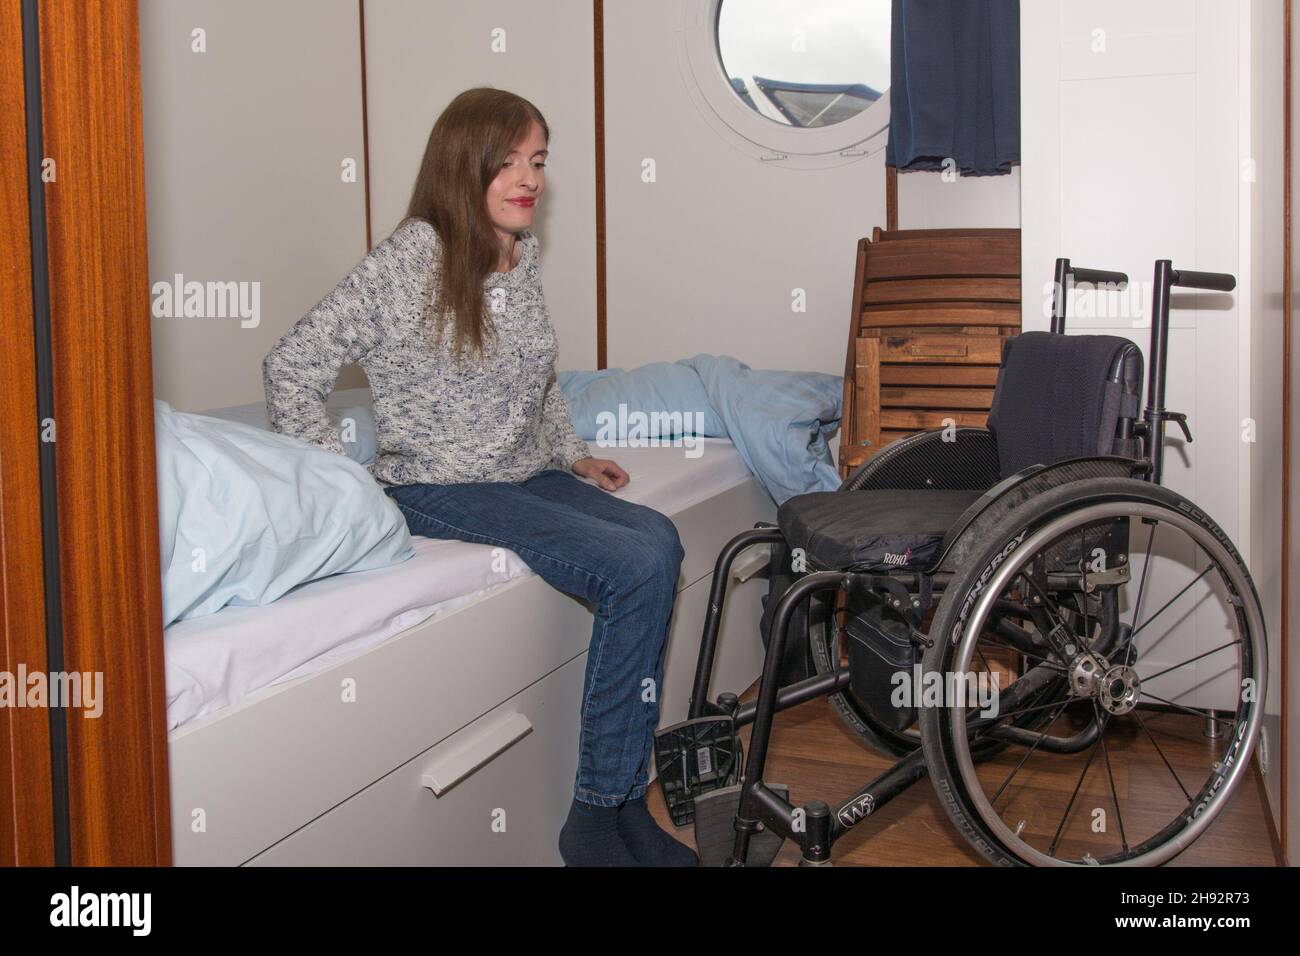 Frau im Rollstuhl auf Hausboot sich um in Bett Foto Stock